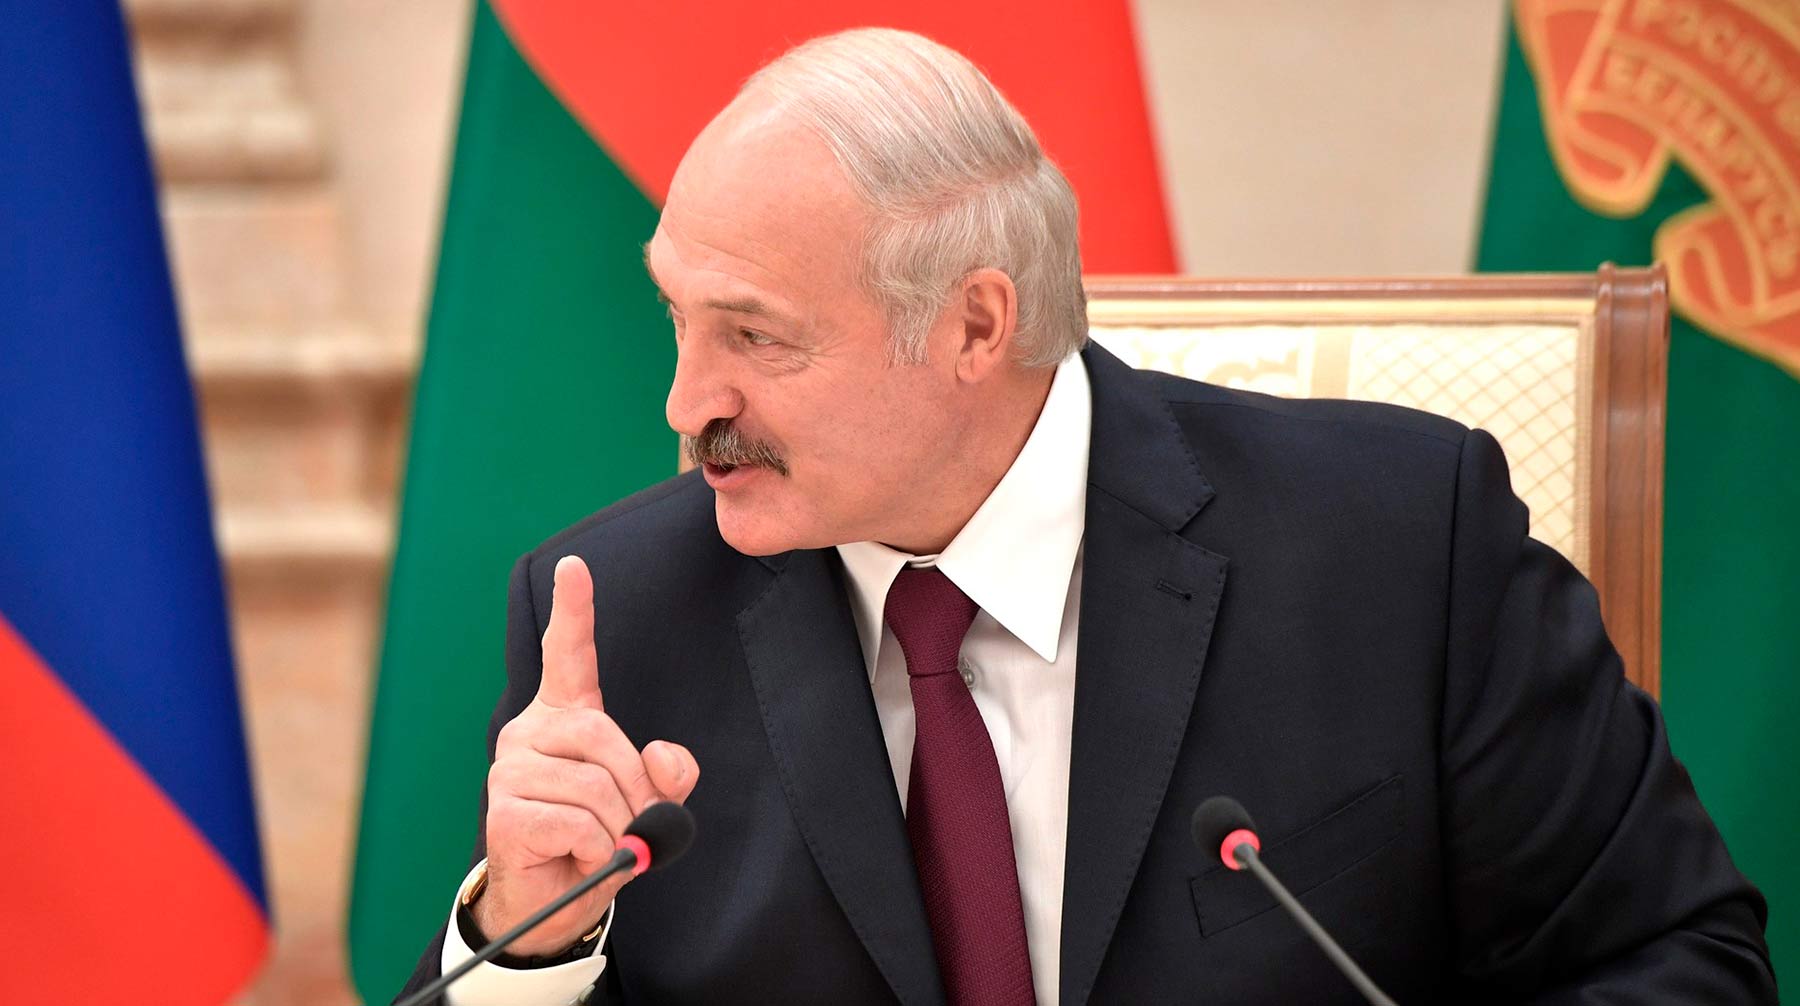 Белорусский лидер заявил, что не будет показывать себя раздетым или пьяным на своем новом сайте Фото: © Global Look Press / Kremlin Pool